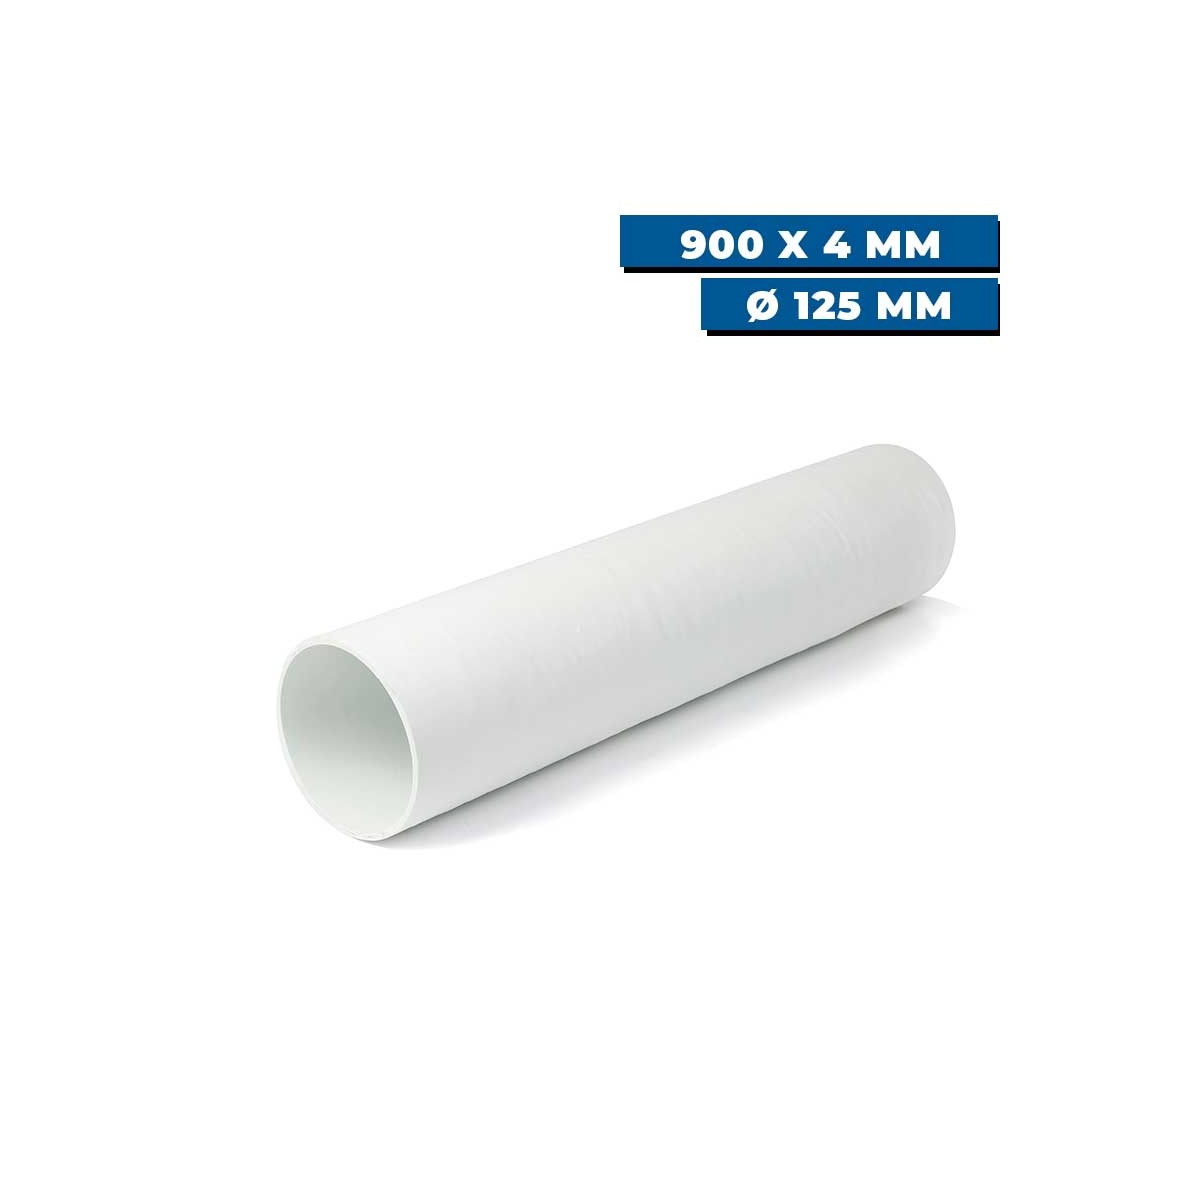 Tunnel polyester pour propulseur Ø 125 mm Sleipner 900 x 4 mm